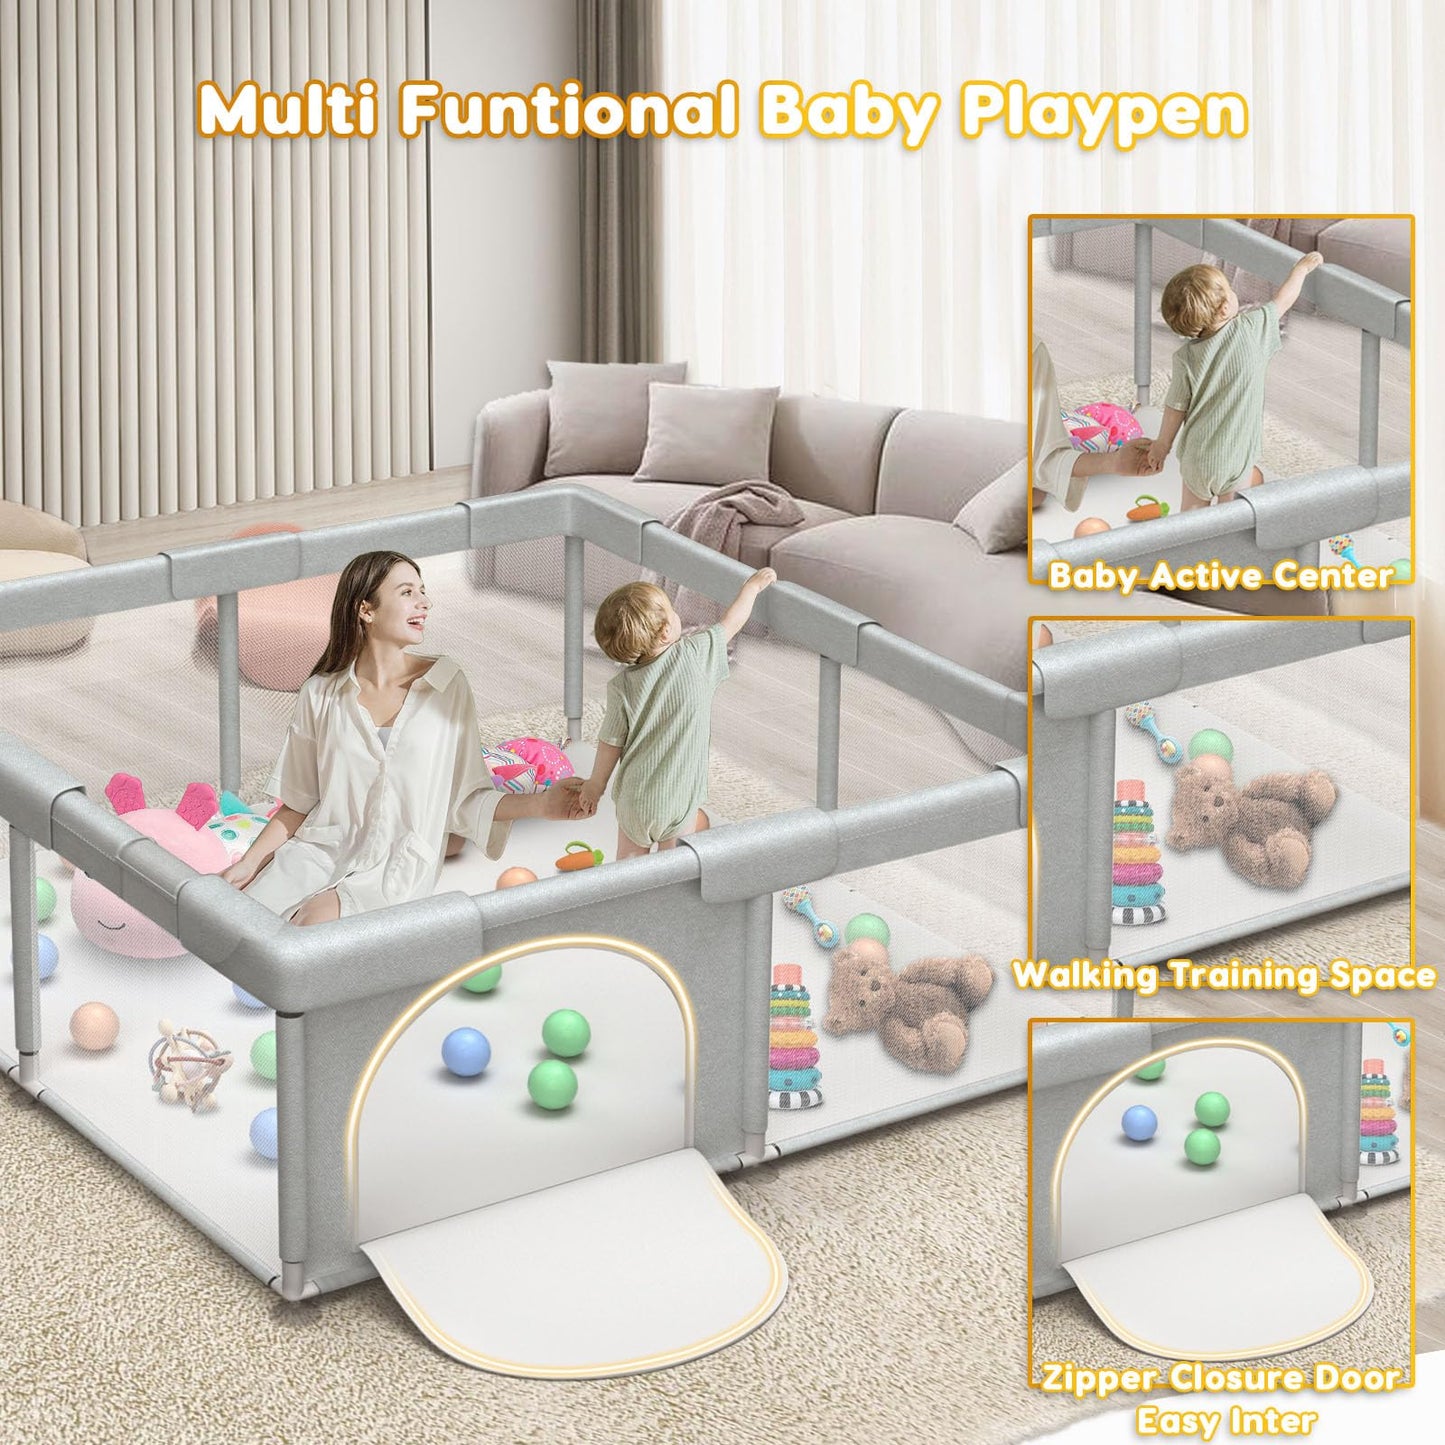 Indoor and outdoor playpen for baby